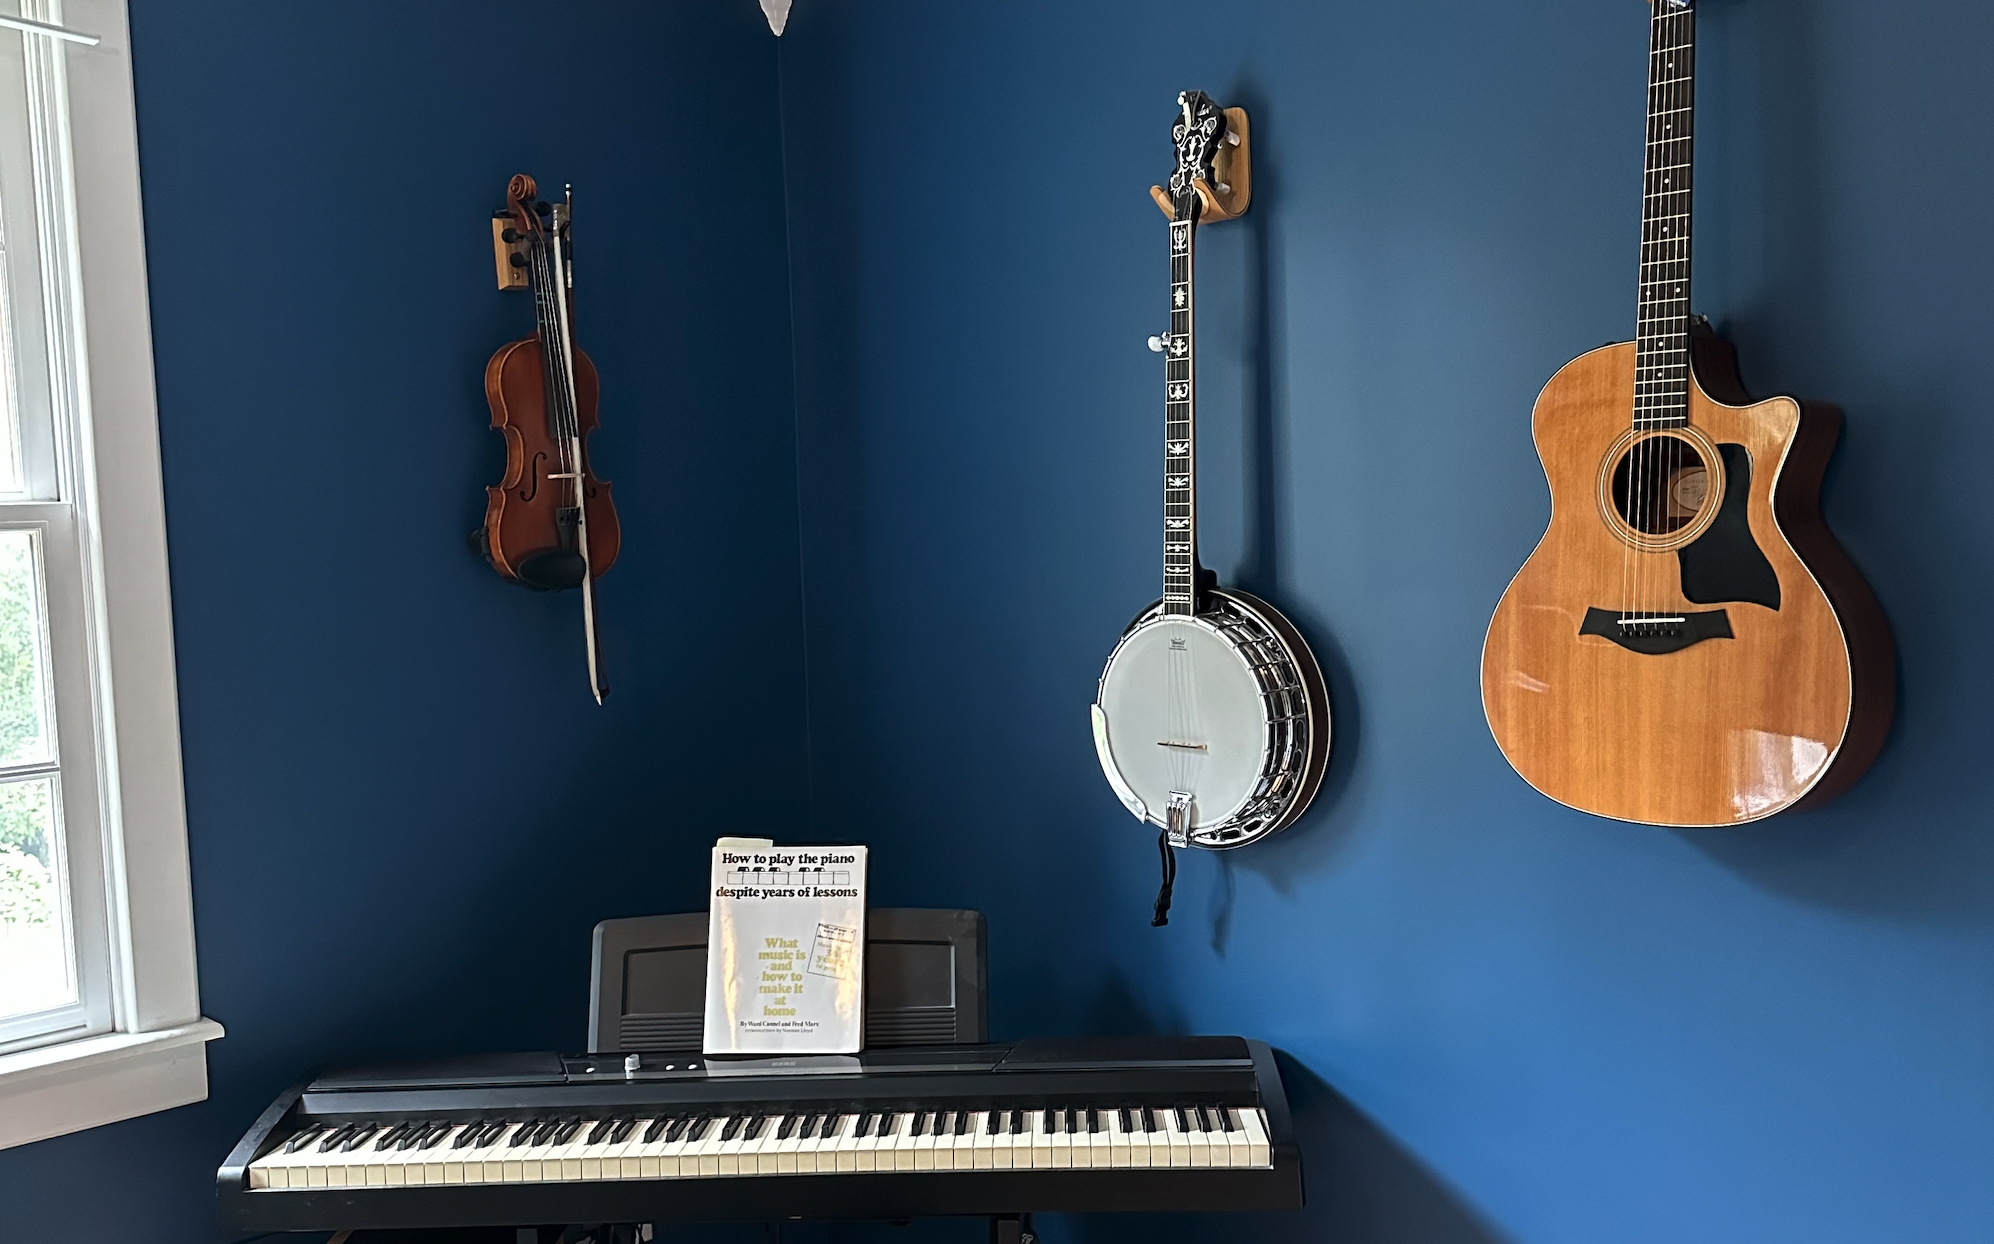 my musical instruments, piano, violin, banjo, and guitar